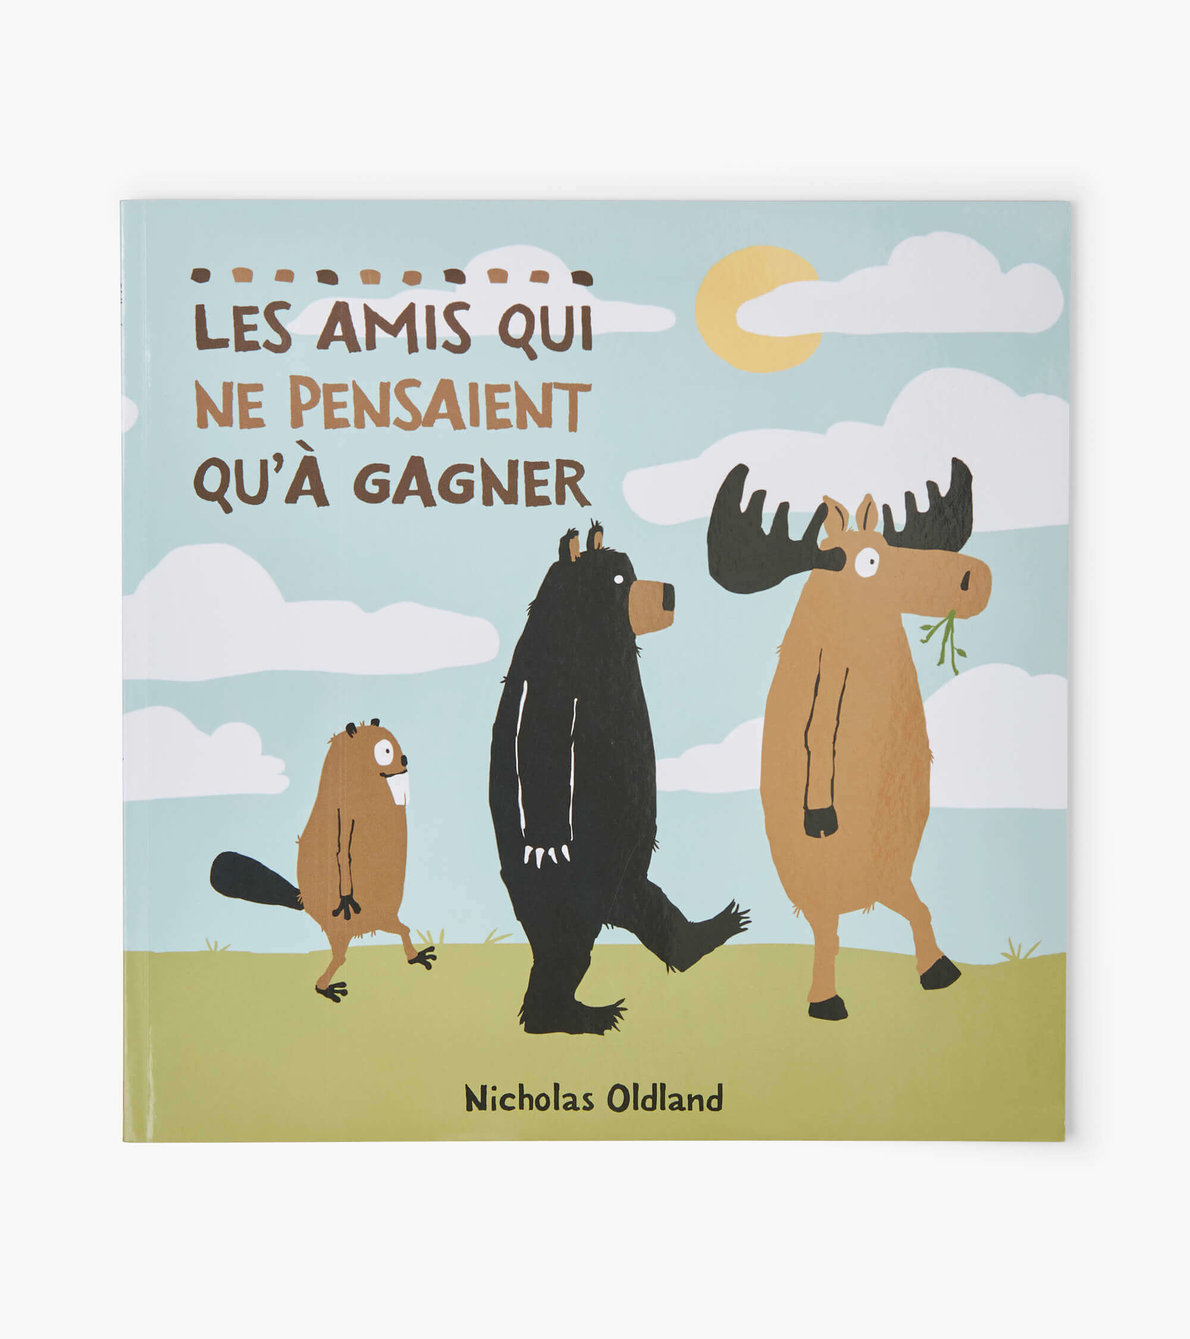 View larger image of "Les amis qui ne pensaient qu'à gagner" French Children's Book